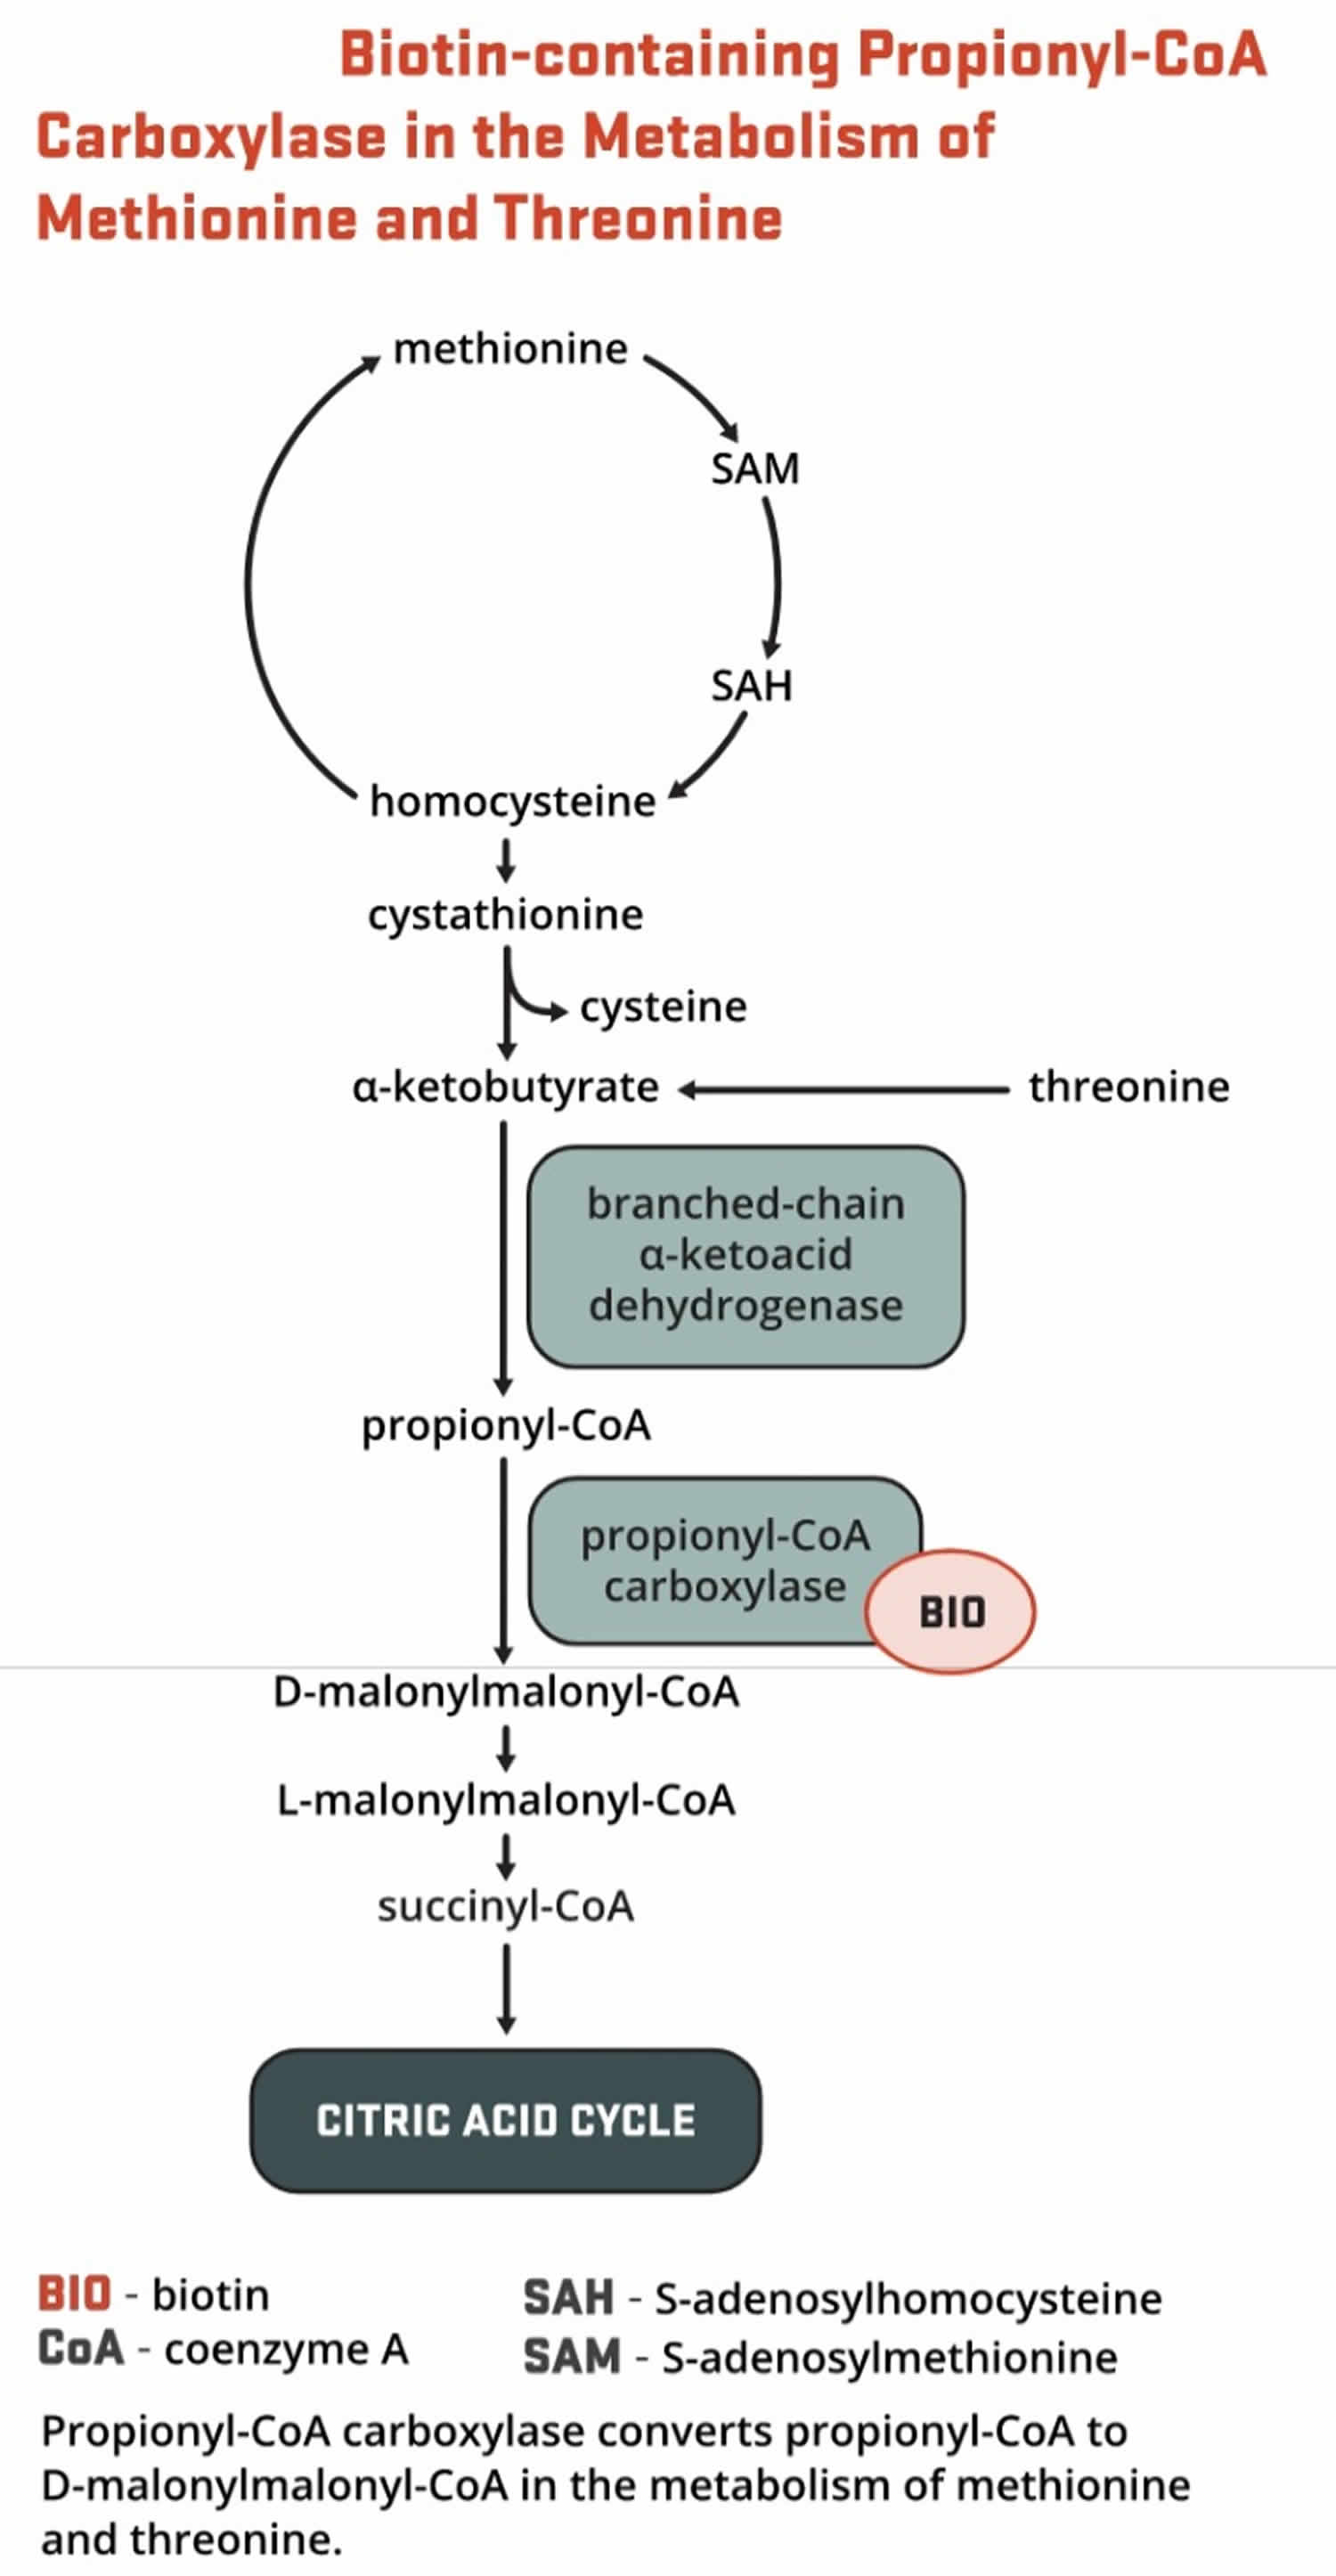 Biotin as enzyme cofactor in amino acids methionine and threonine metabolism